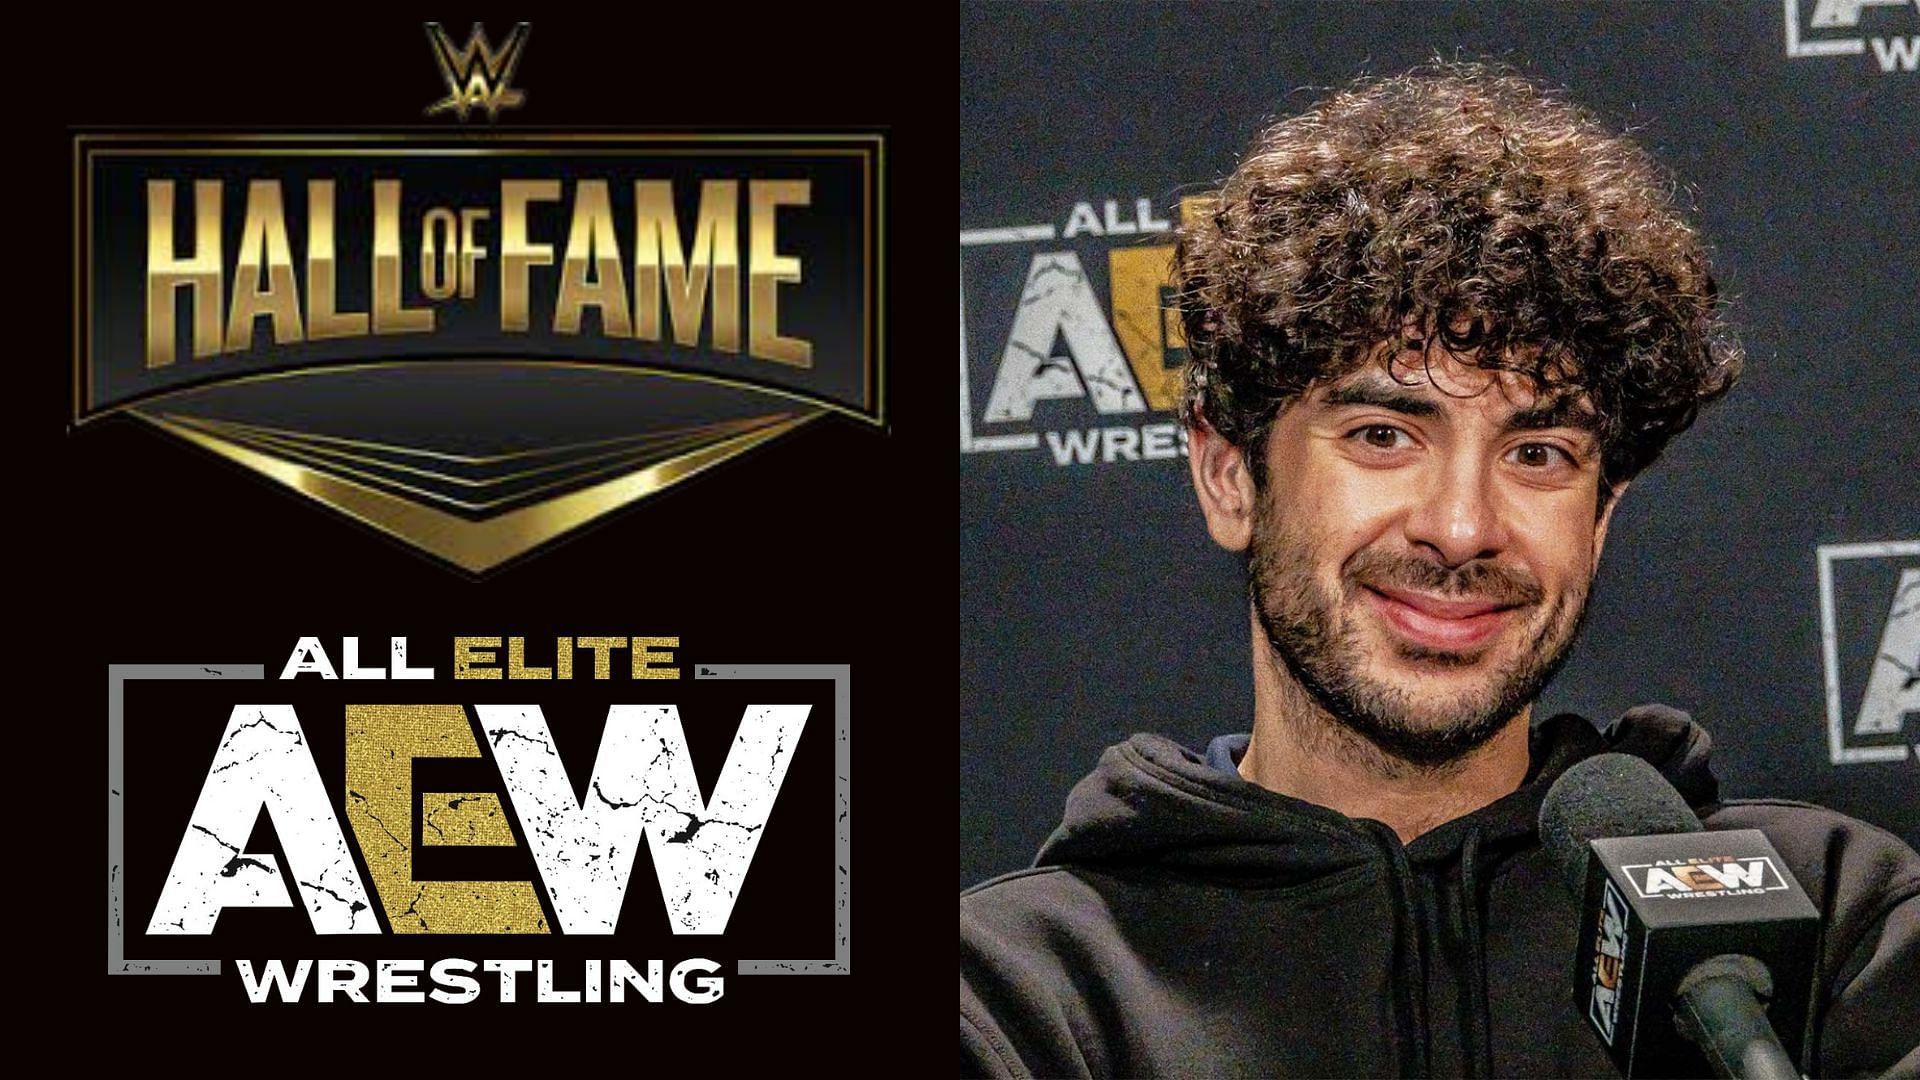 AEW and WWE logo (left), Tony Khan (right)